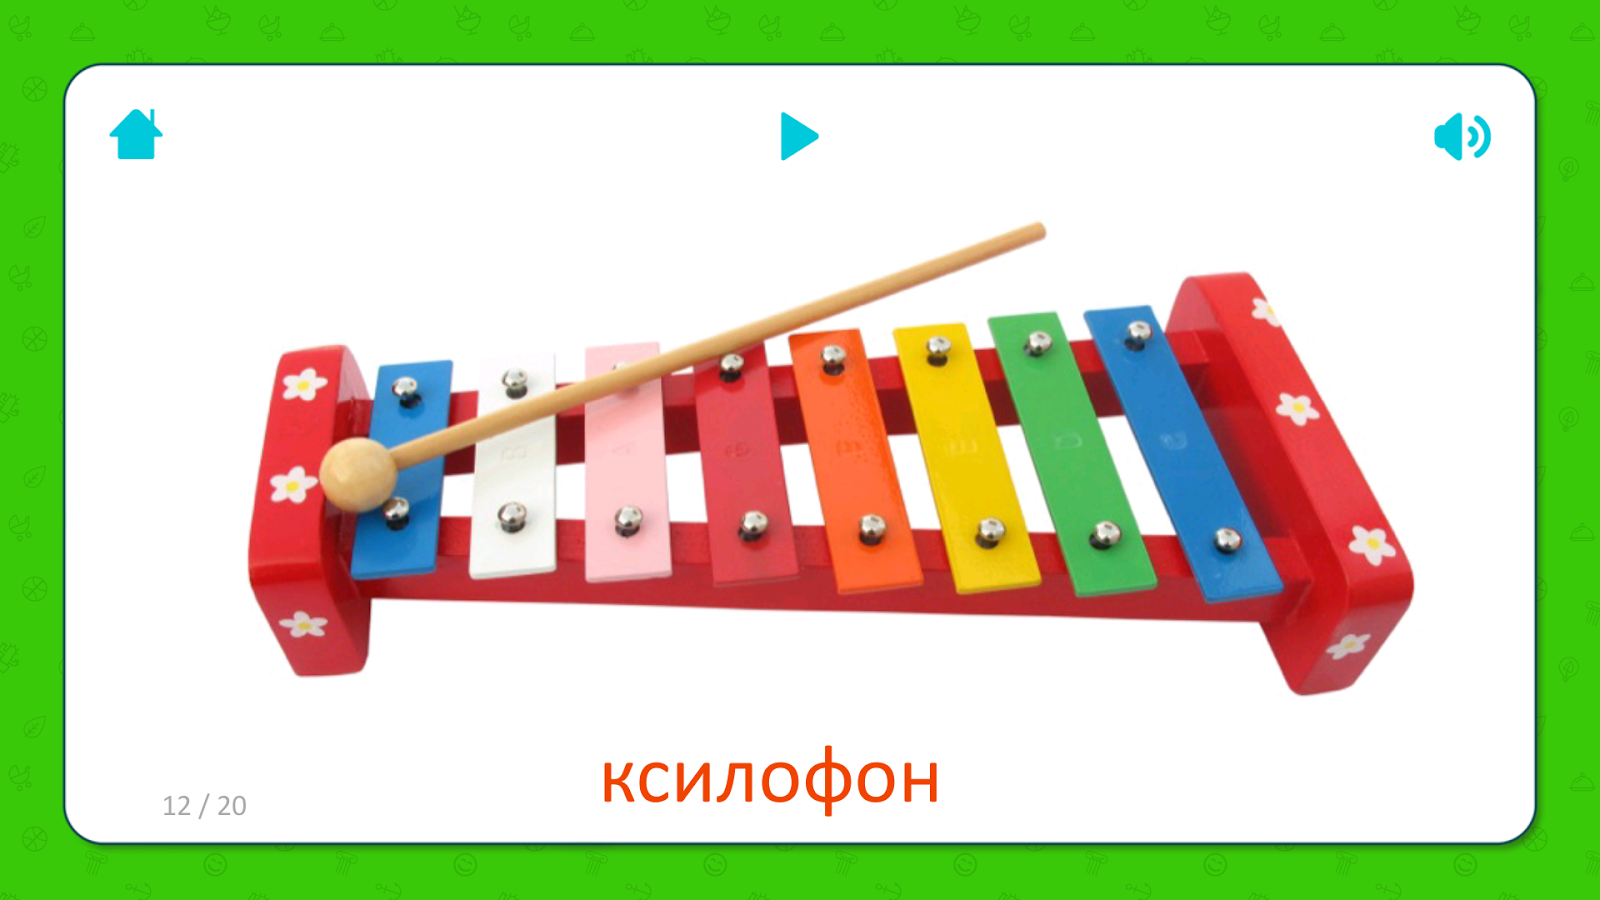 Ксилофон музыка. Детские музыкальные инструменты. Металлофон музыкальный инструмент для детей. Карточки музыкальные инструменты для детей. Музыкальные инструменты в детском саду.